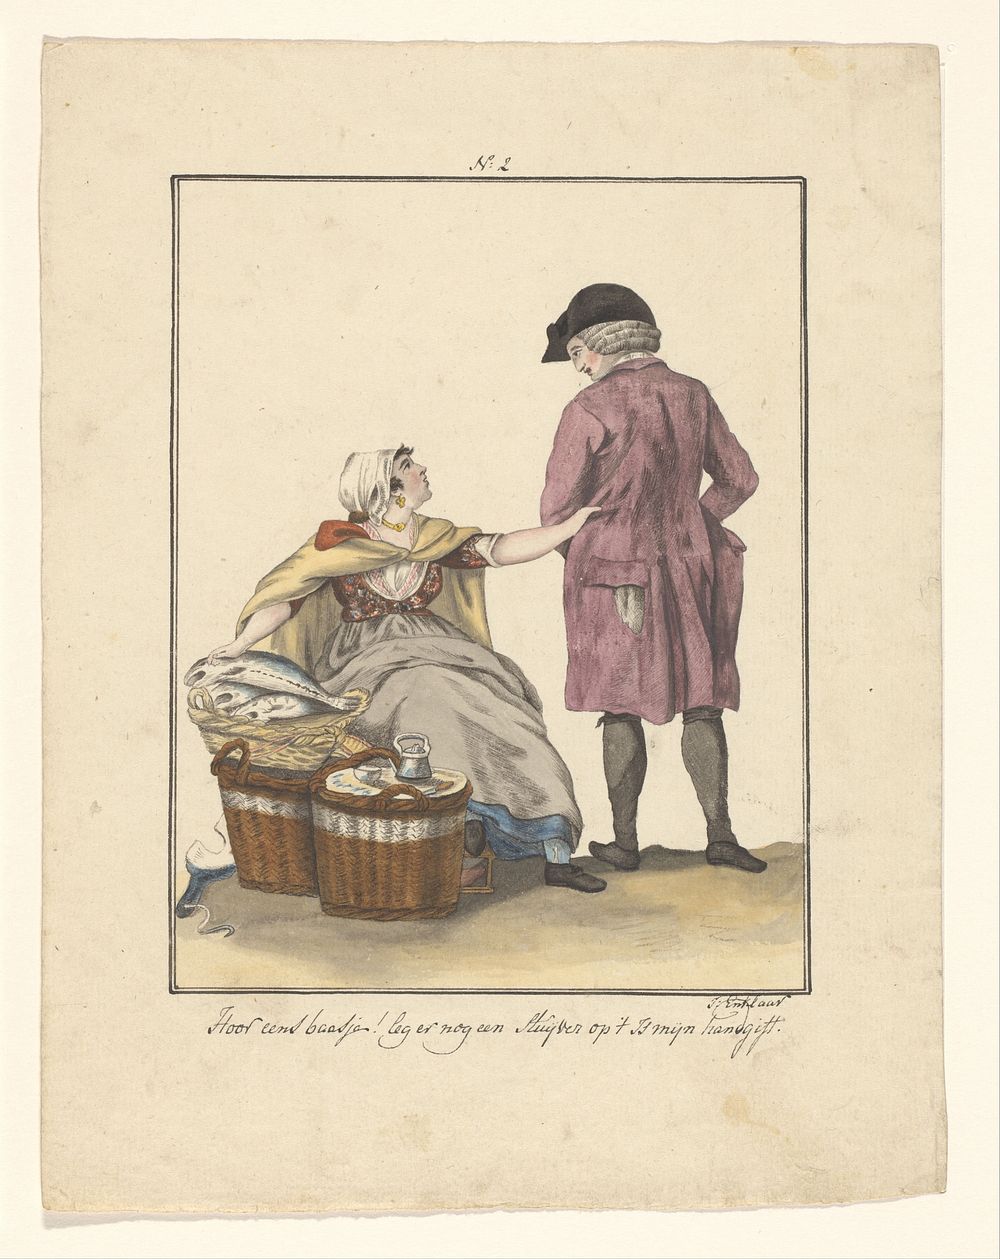 Visverkoopster en klant (in or after 1803 - c. 1899) by J Enklaar and Ludwig Gottlieb Portman